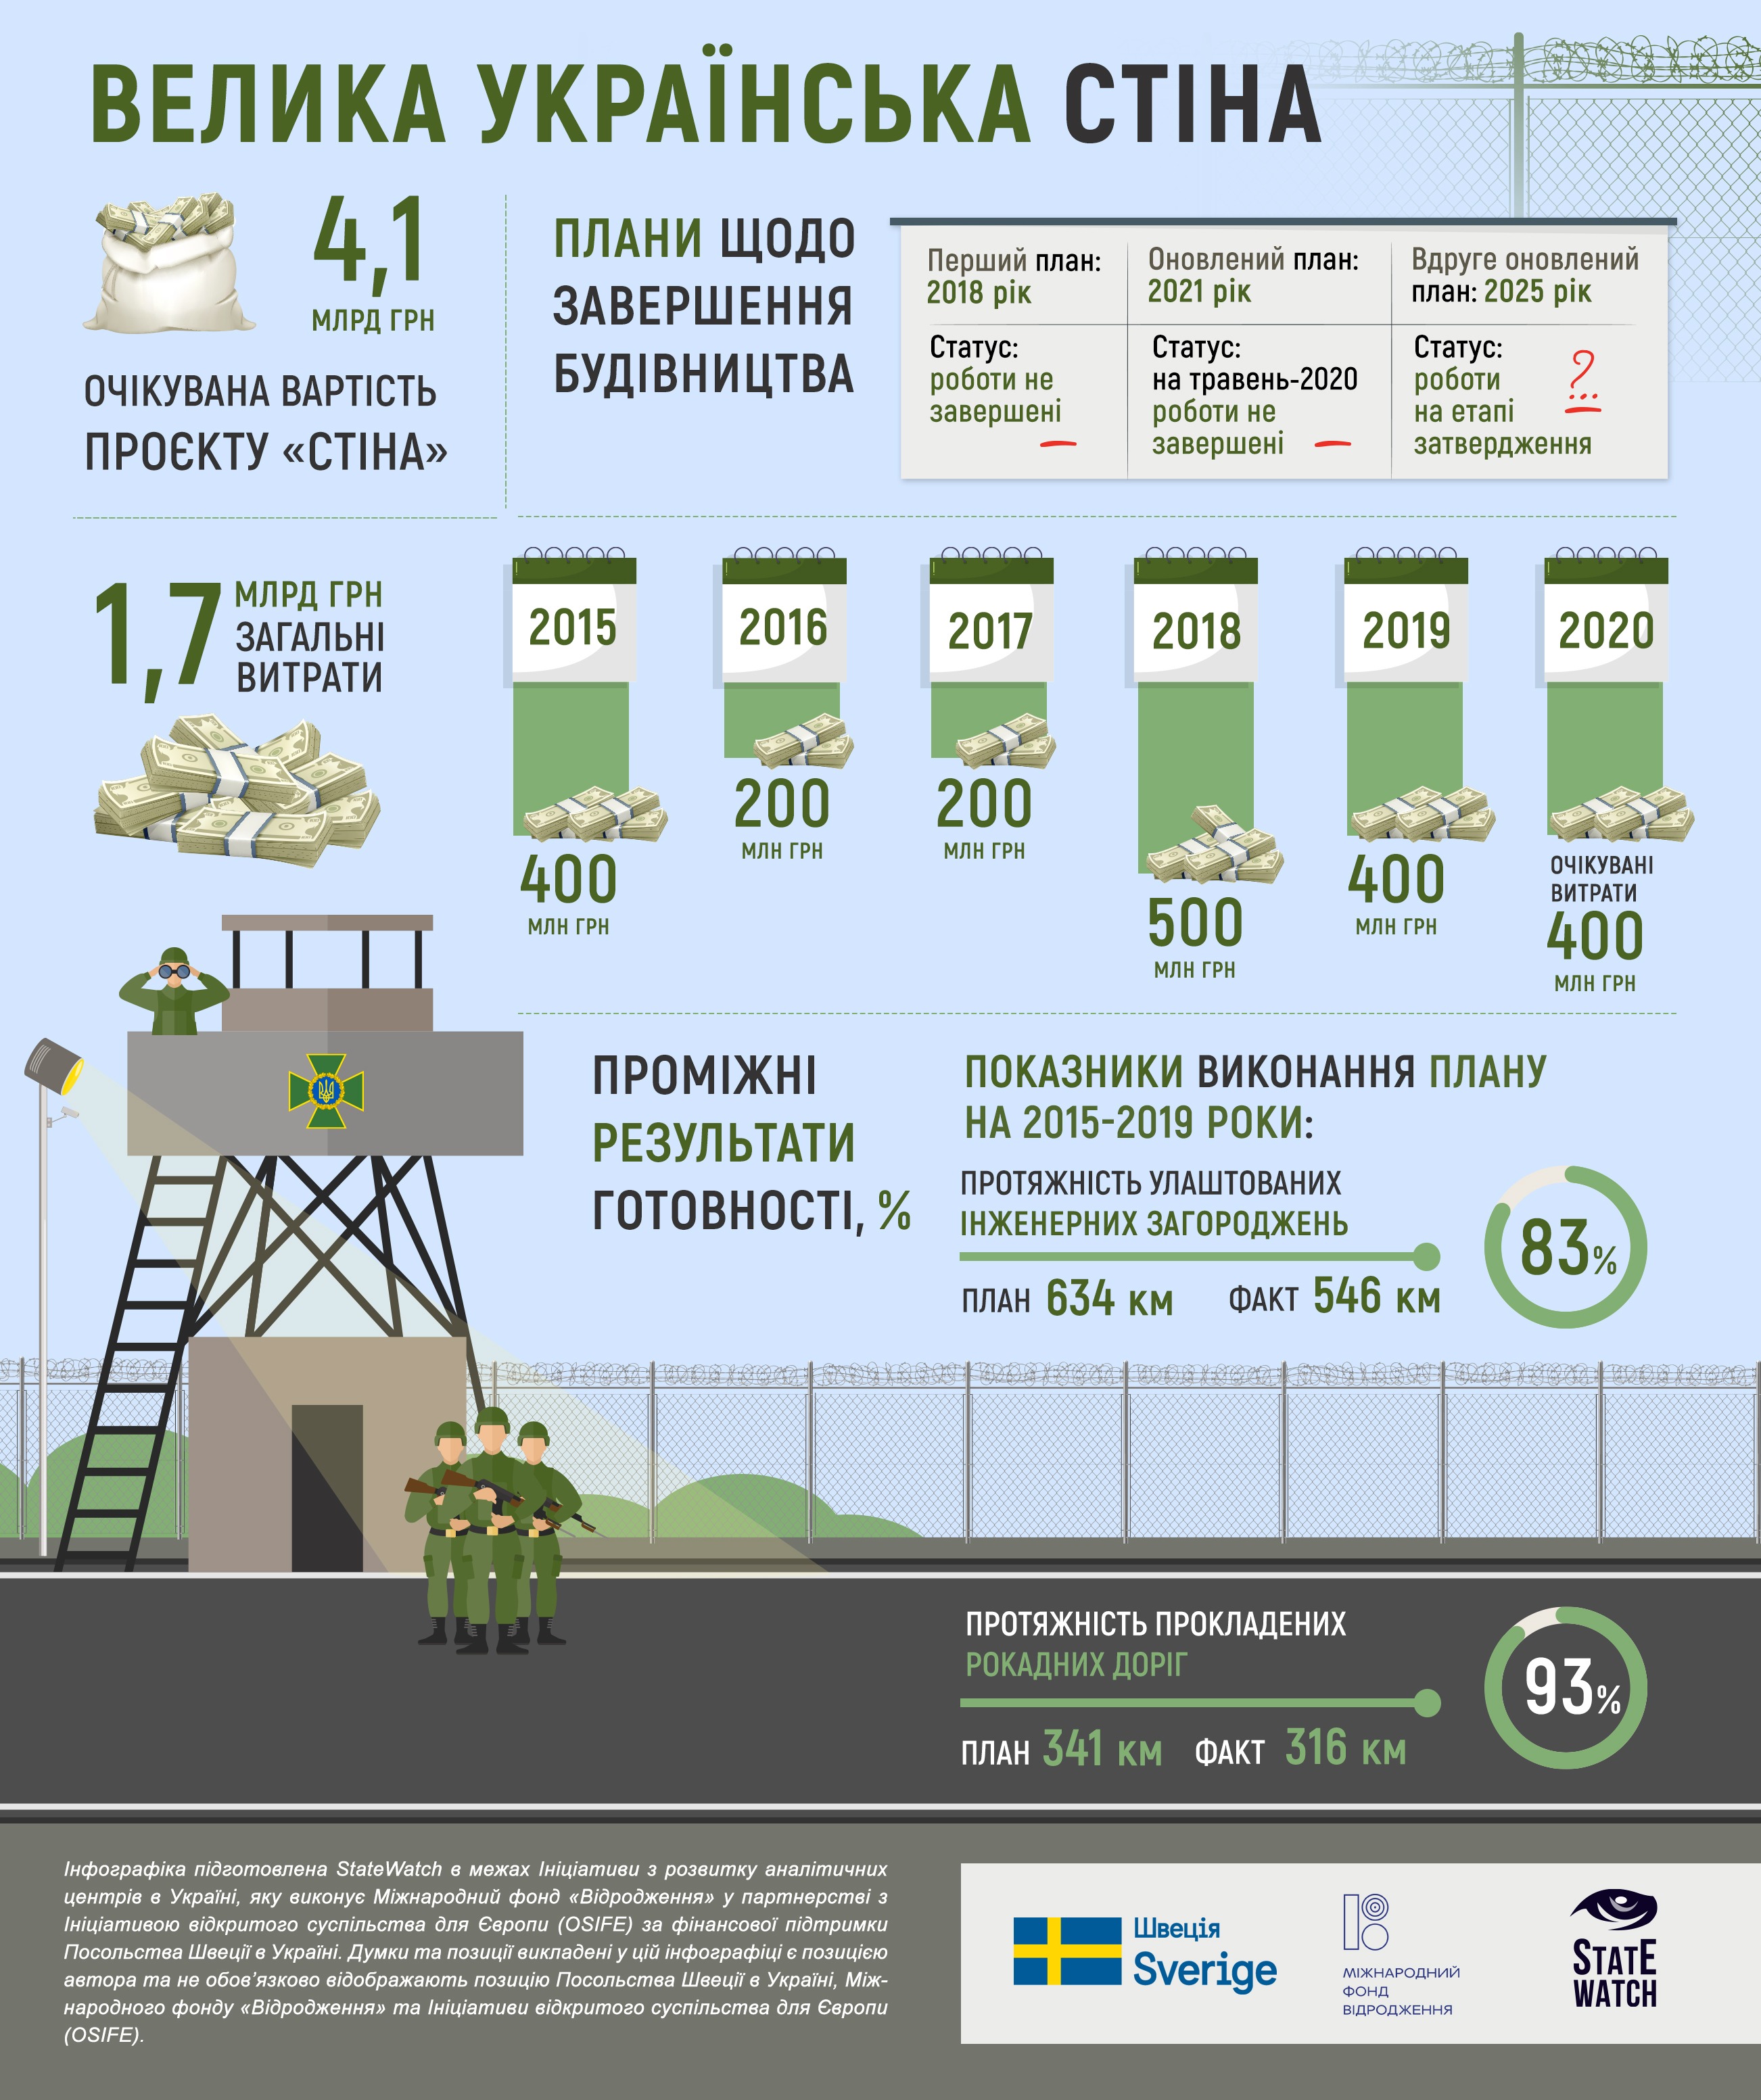 Как продвигается строительство Стены Яценюка. Инфографика: statewatch.org.ua